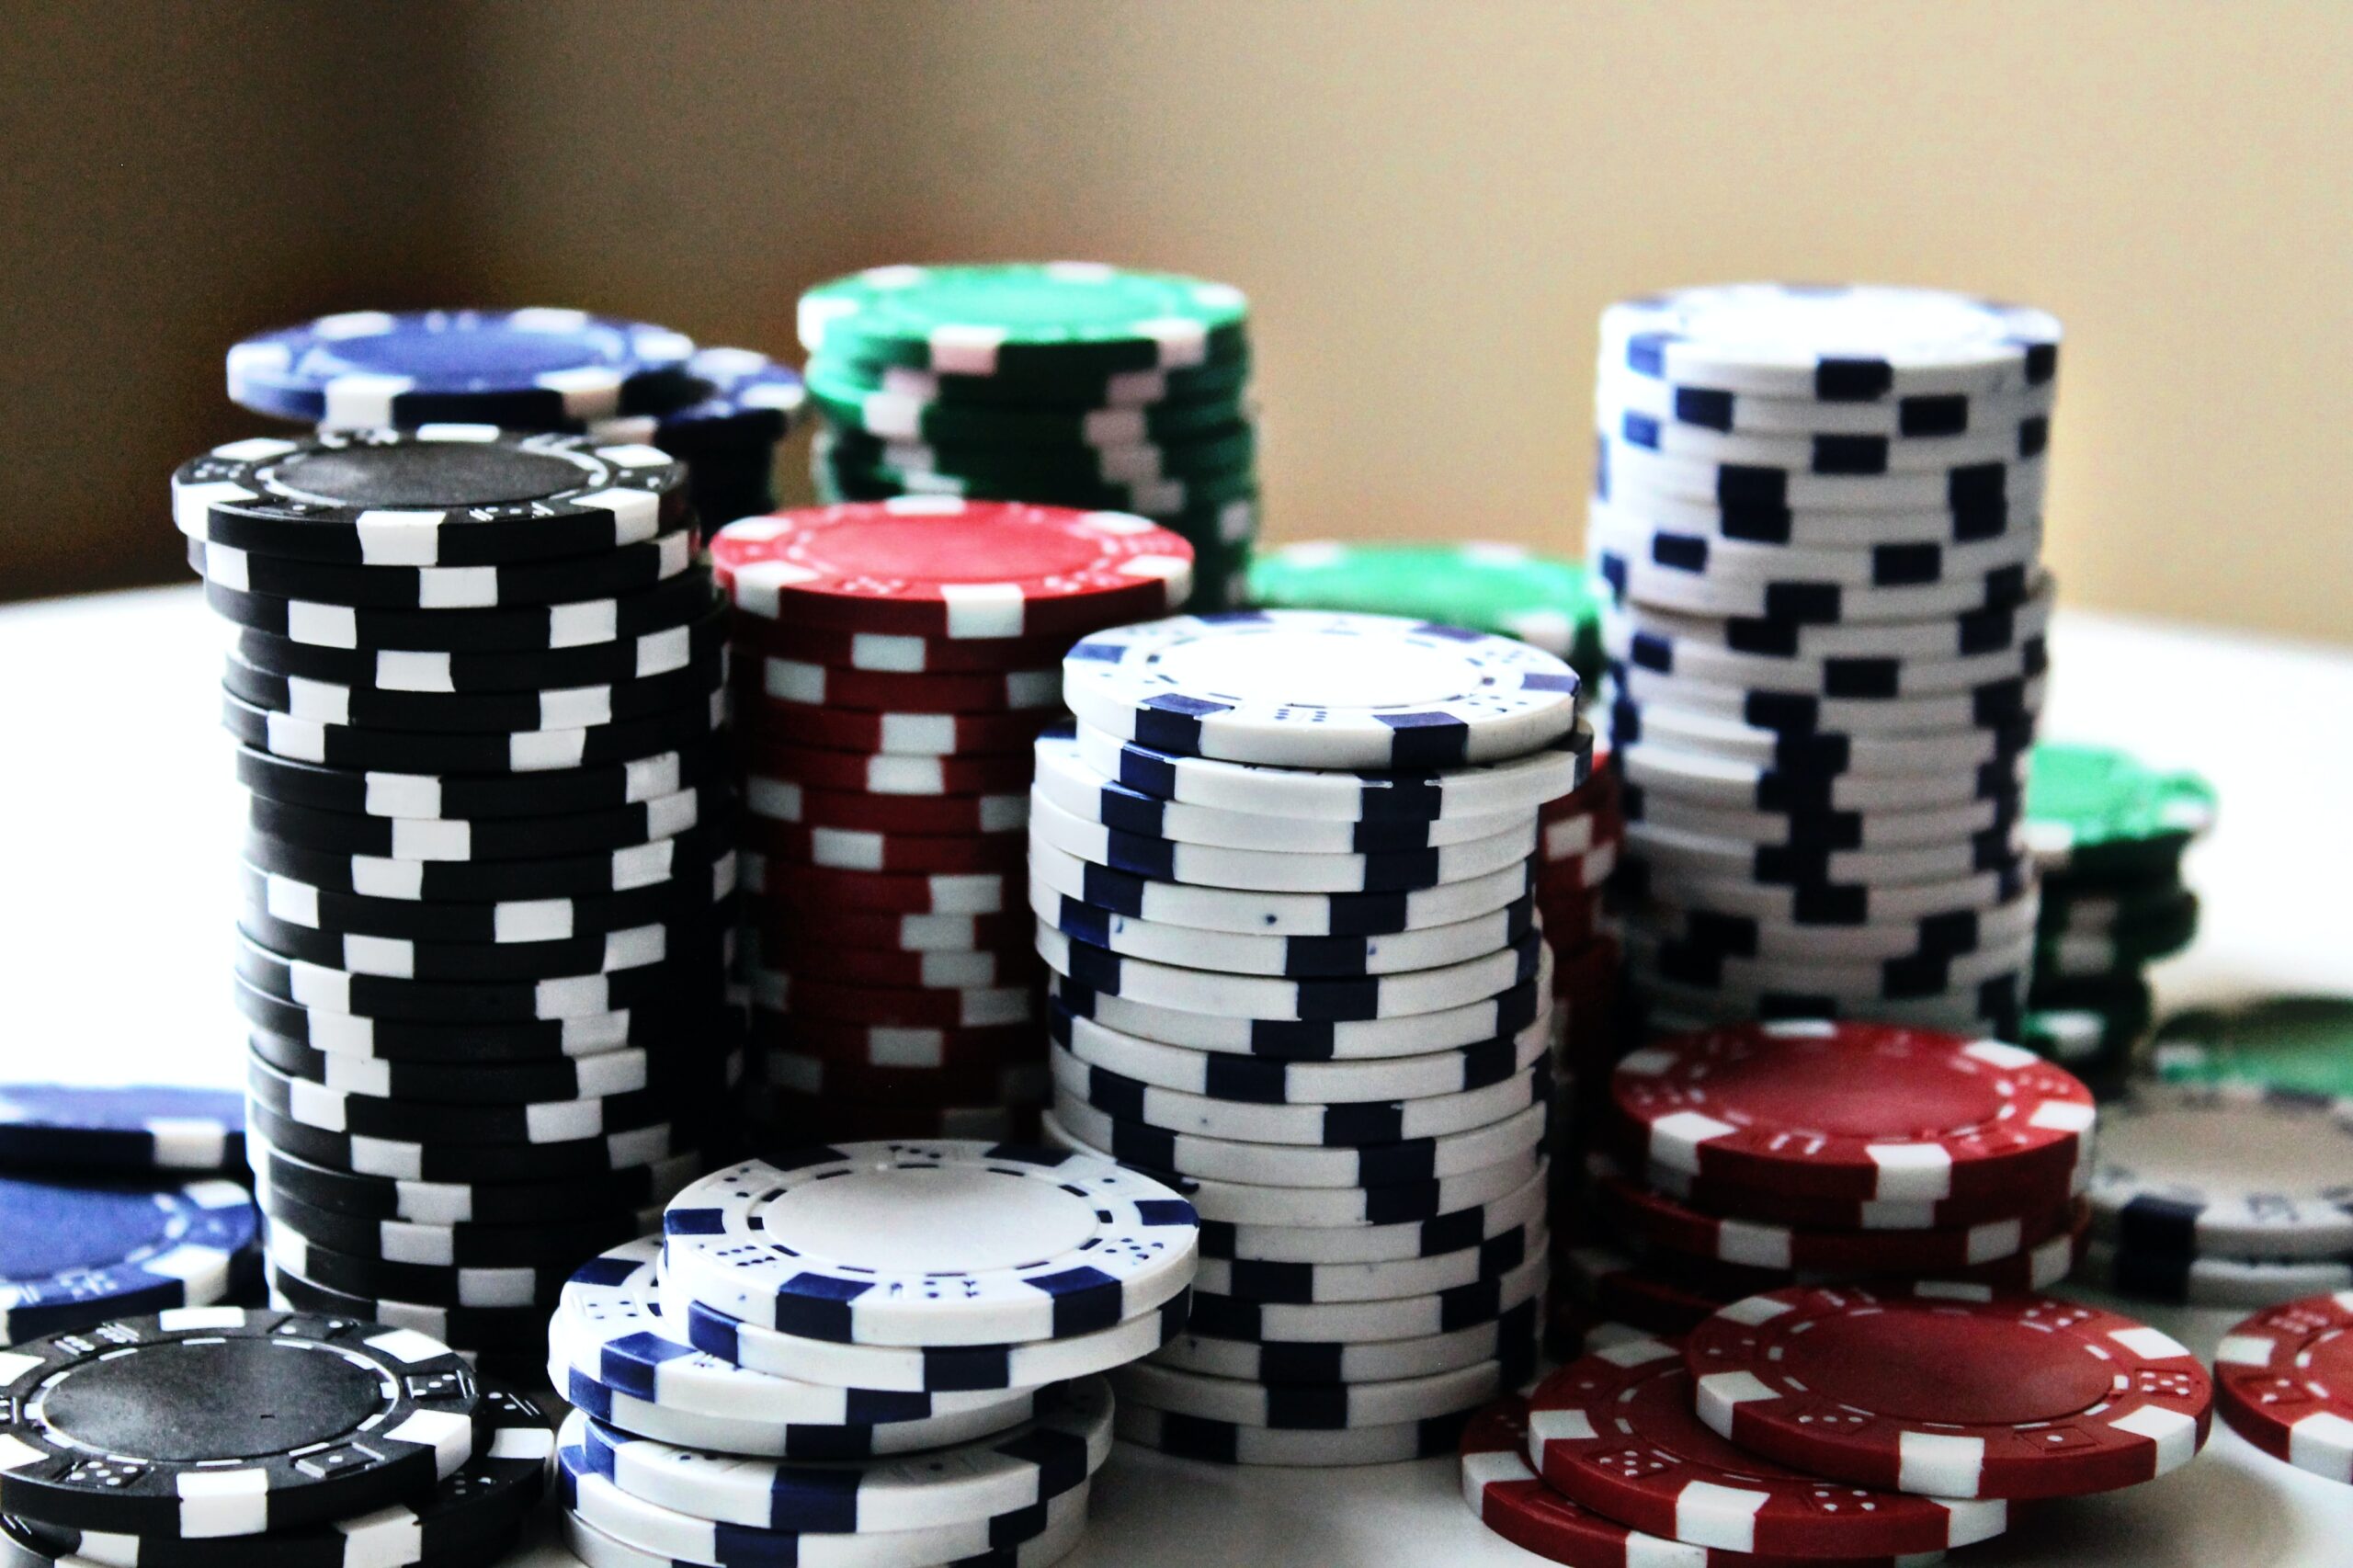 Quelle différence entre le format poker et bridge d'un jeu de